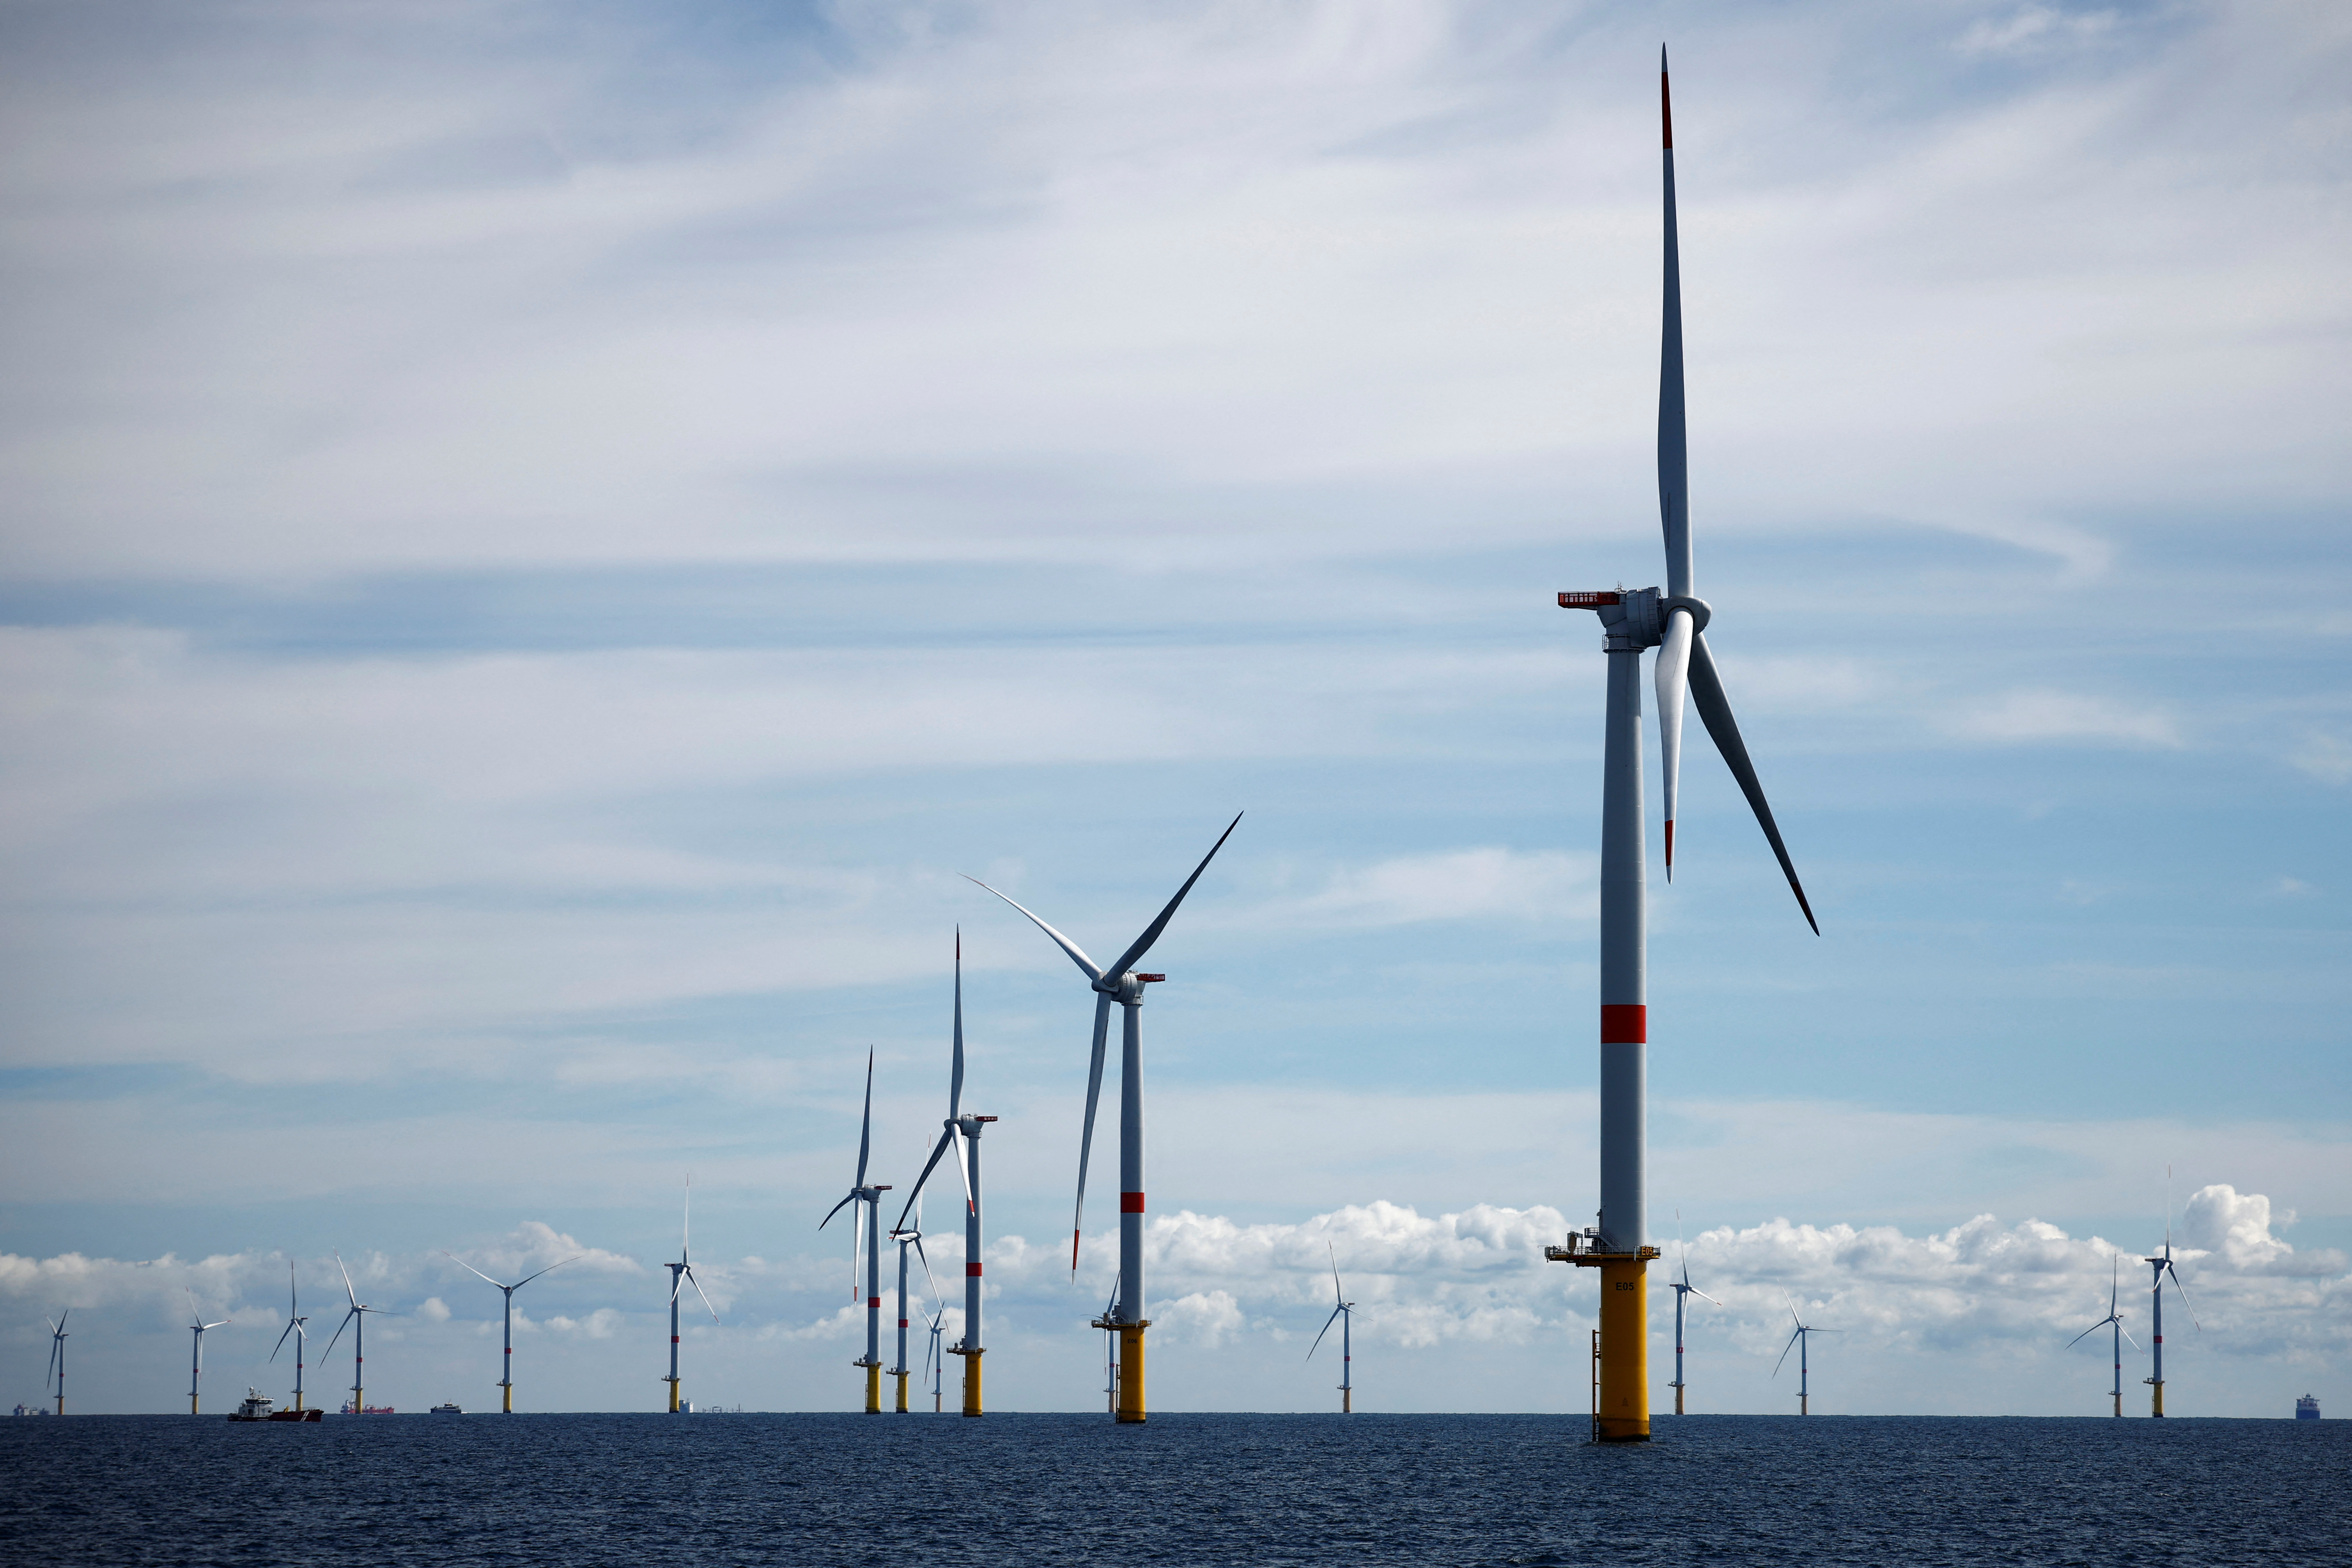 EDF annonce la mise en service complète du parc éolien en mer de Saint-Nazaire